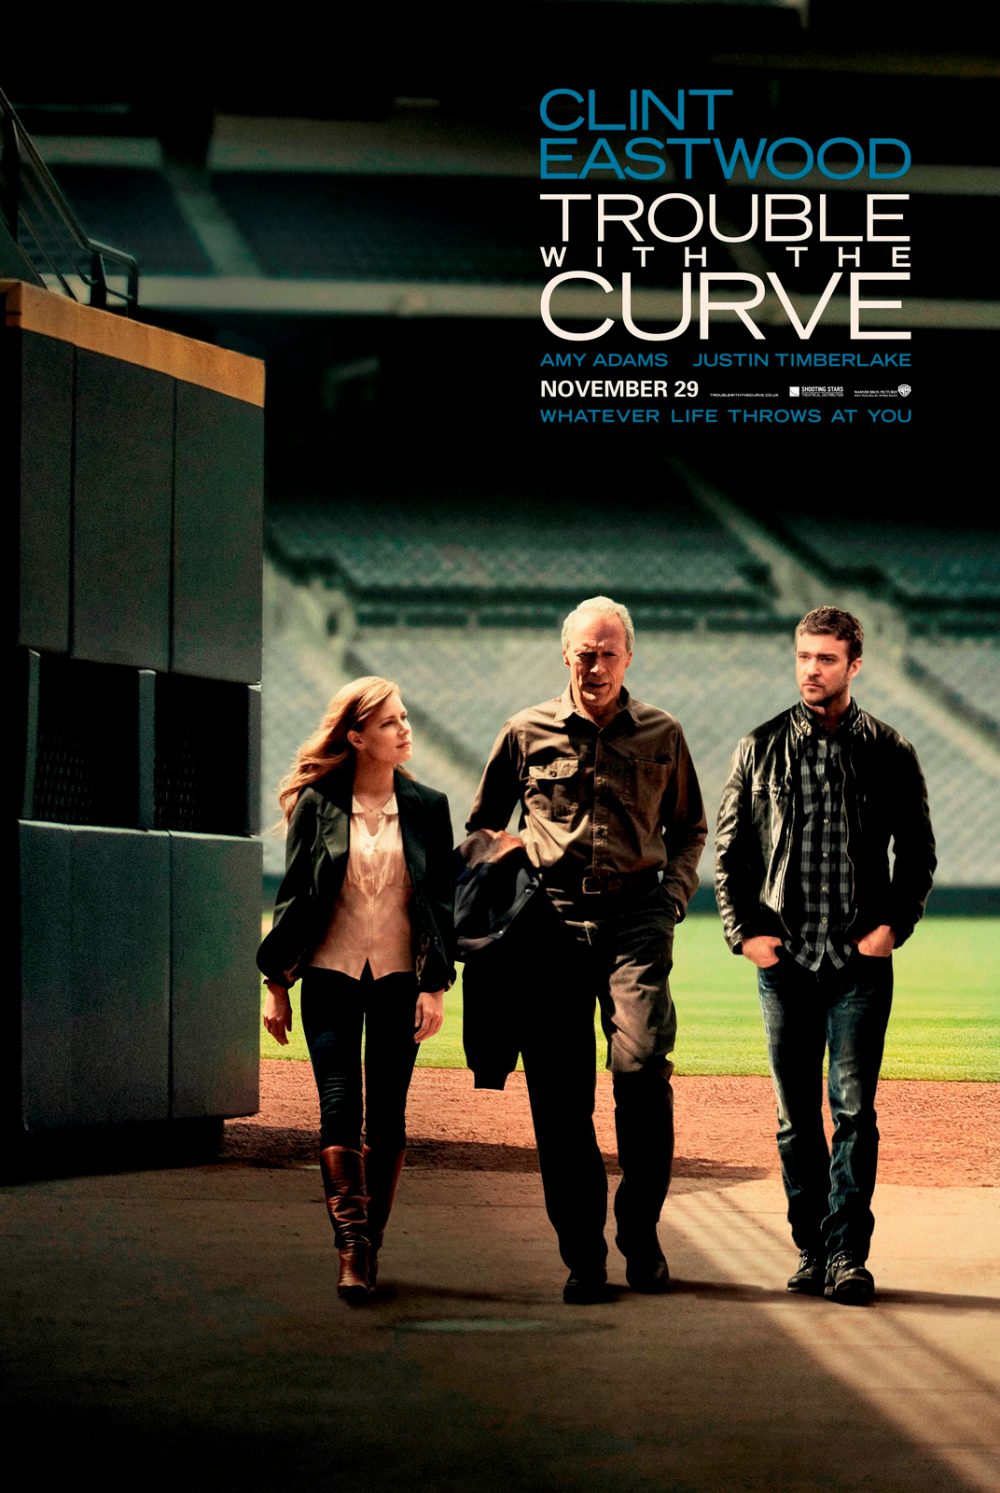 Rắc rối vòng quanh – Trouble with the curve (2012)